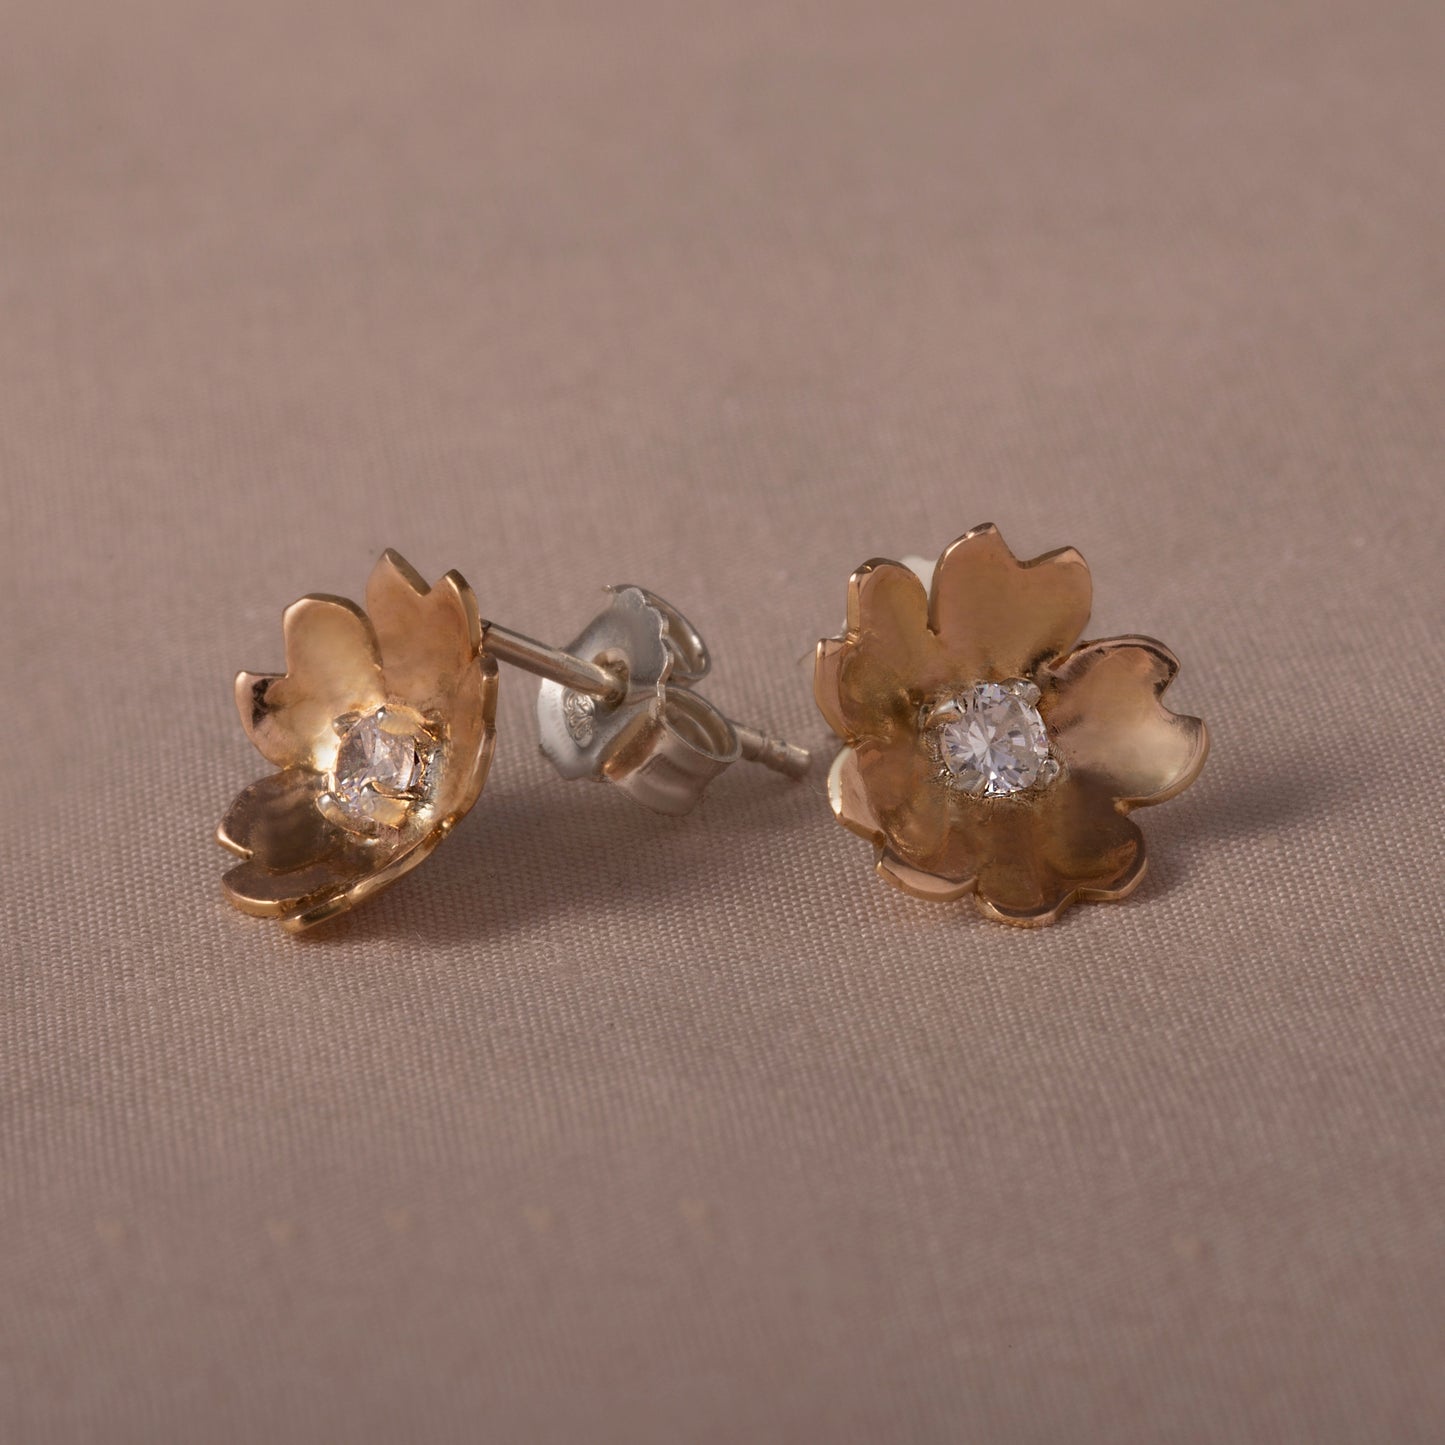 Lady Marian earrings